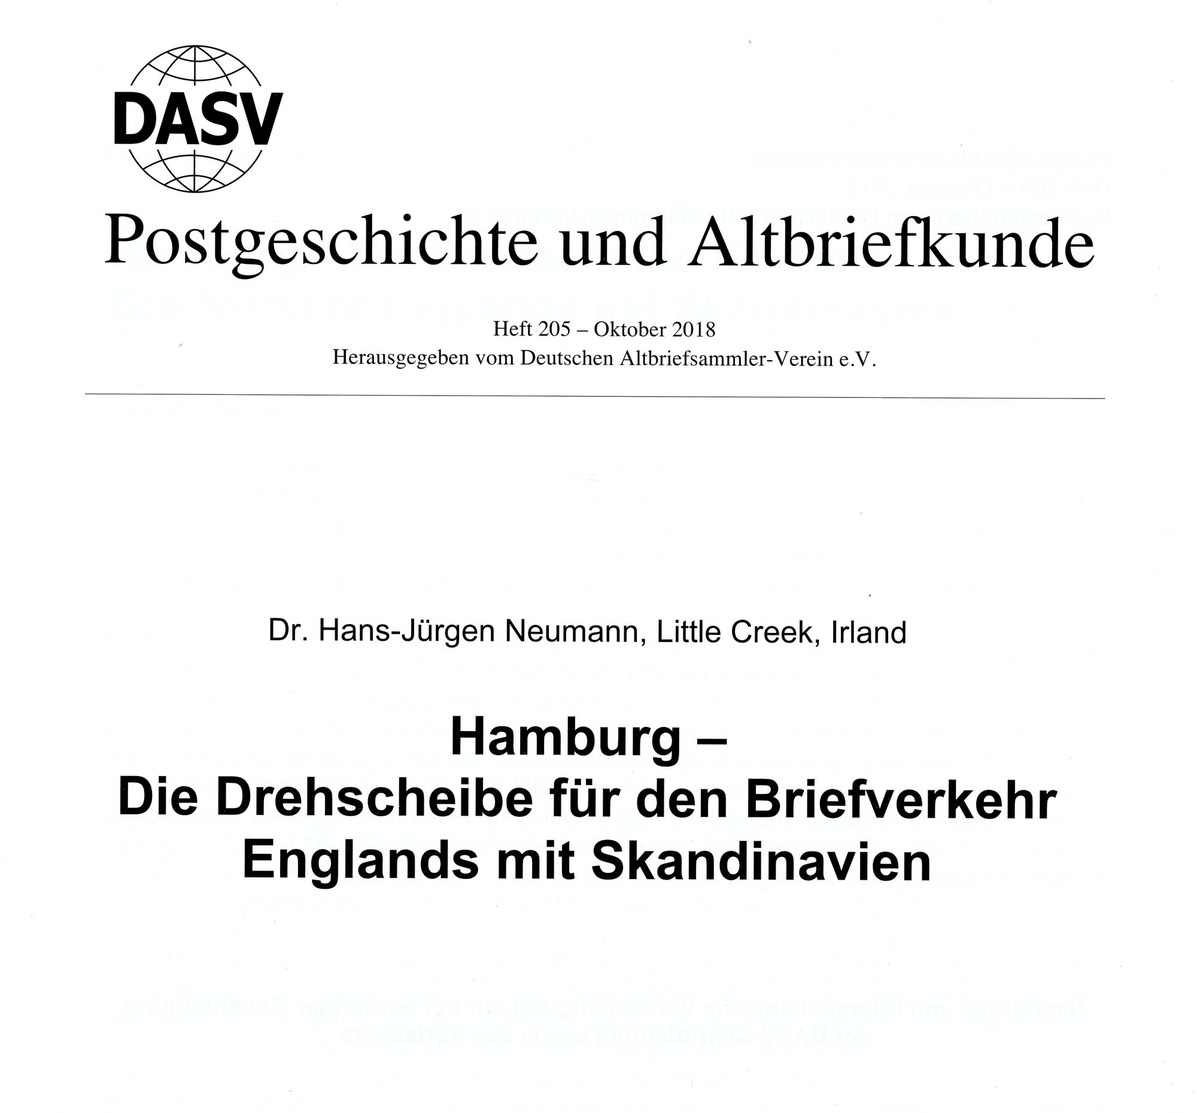 Hamburg Drehscheibe F. D. Briefverkehr Englands Mit Skandinavien - Von Dr. Hans-Jürgen Neumann (DASV) PgA 205 Aus 2018 - Philatelie Und Postgeschichte